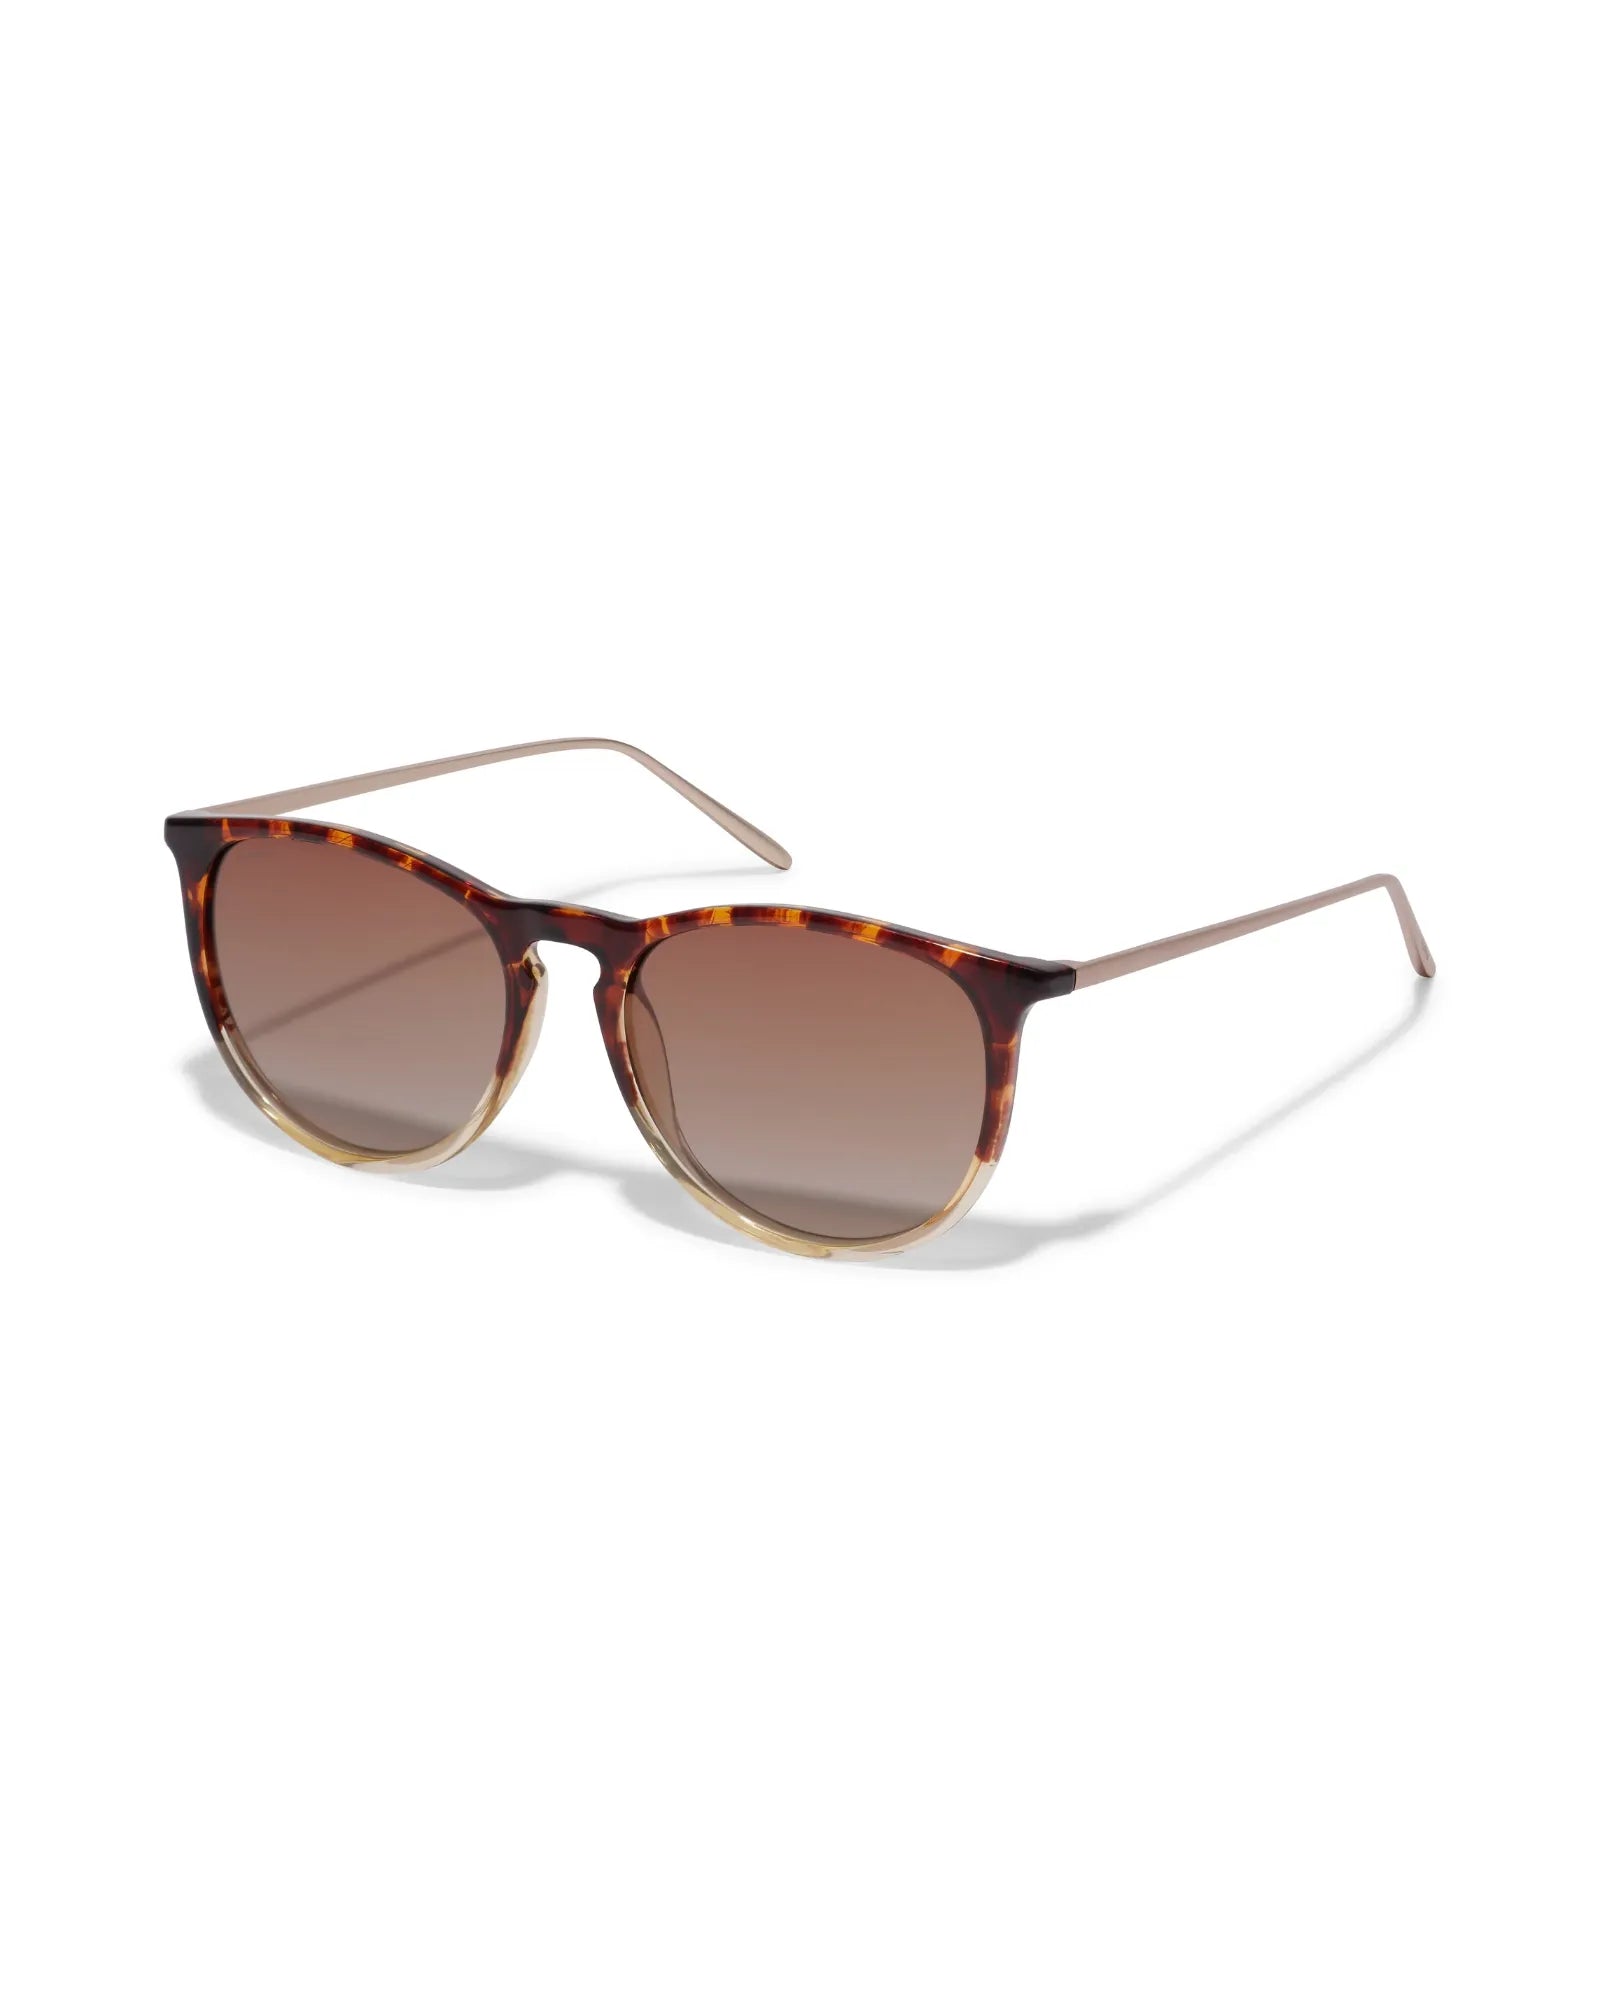 VANILLE Sunglasses - Light Tortoise Brown/Gold